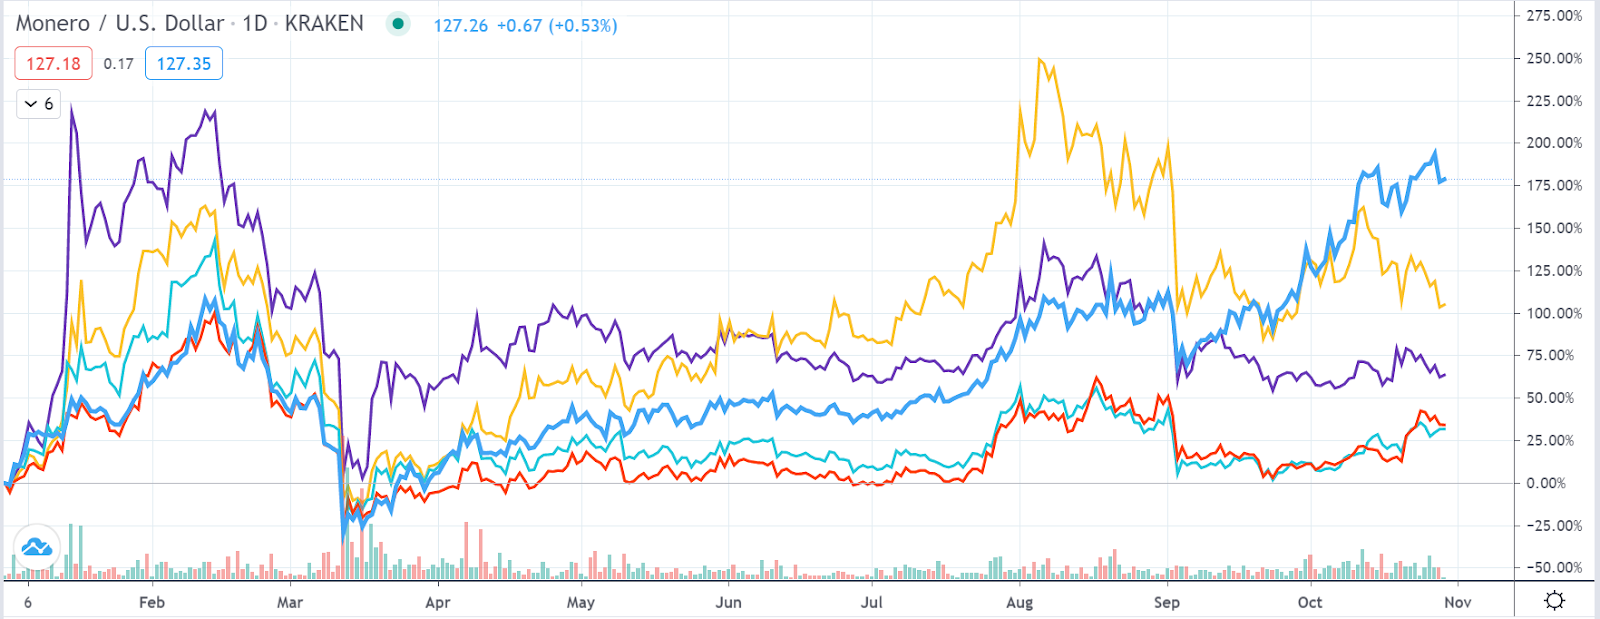 XMR (dark blue) vs ZEC (yellow) vs DASH (purple) vs LTC (red) vs BCH (sky blue) price comparison in 2020